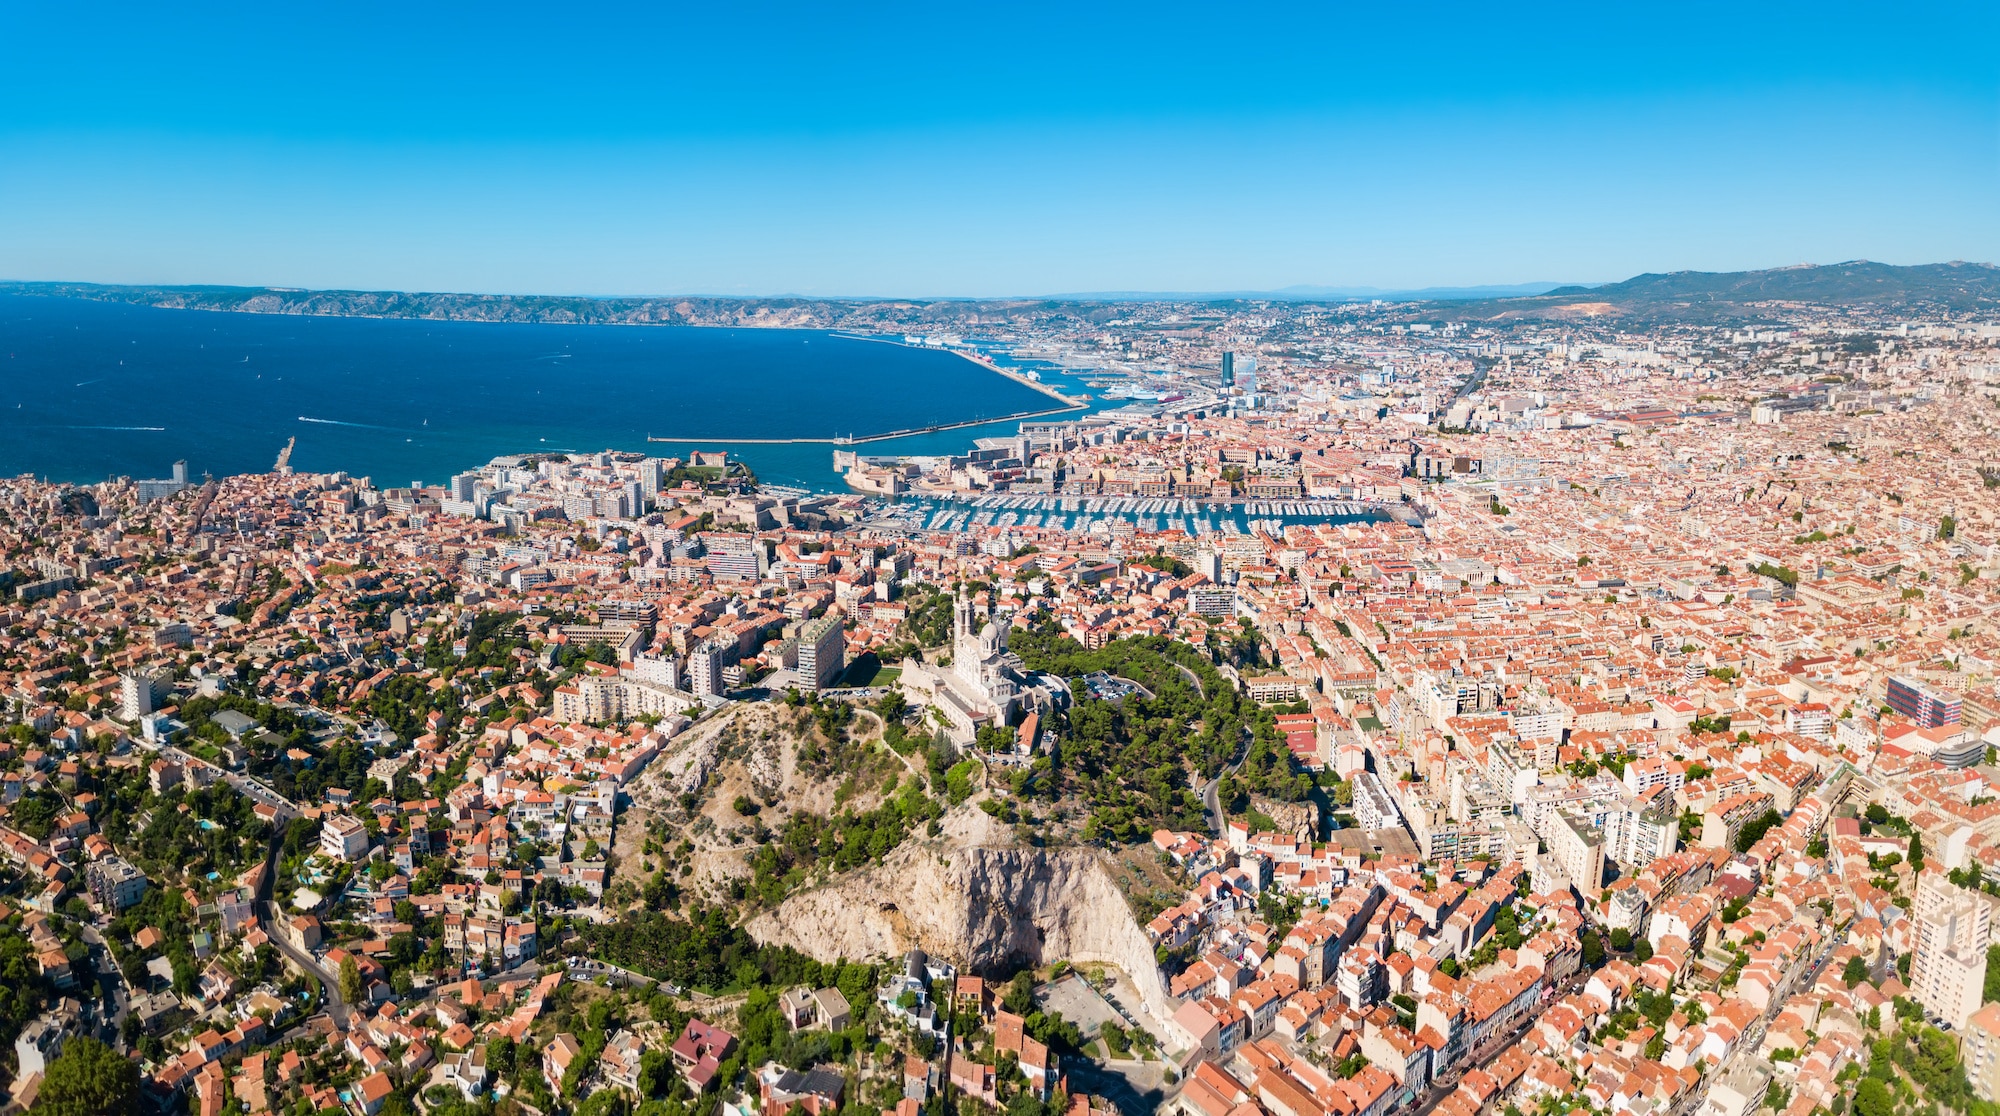 législatives, Législatives : Résultats et réactions à Marseille et dans les Bouches-du-Rhône, Made in Marseille